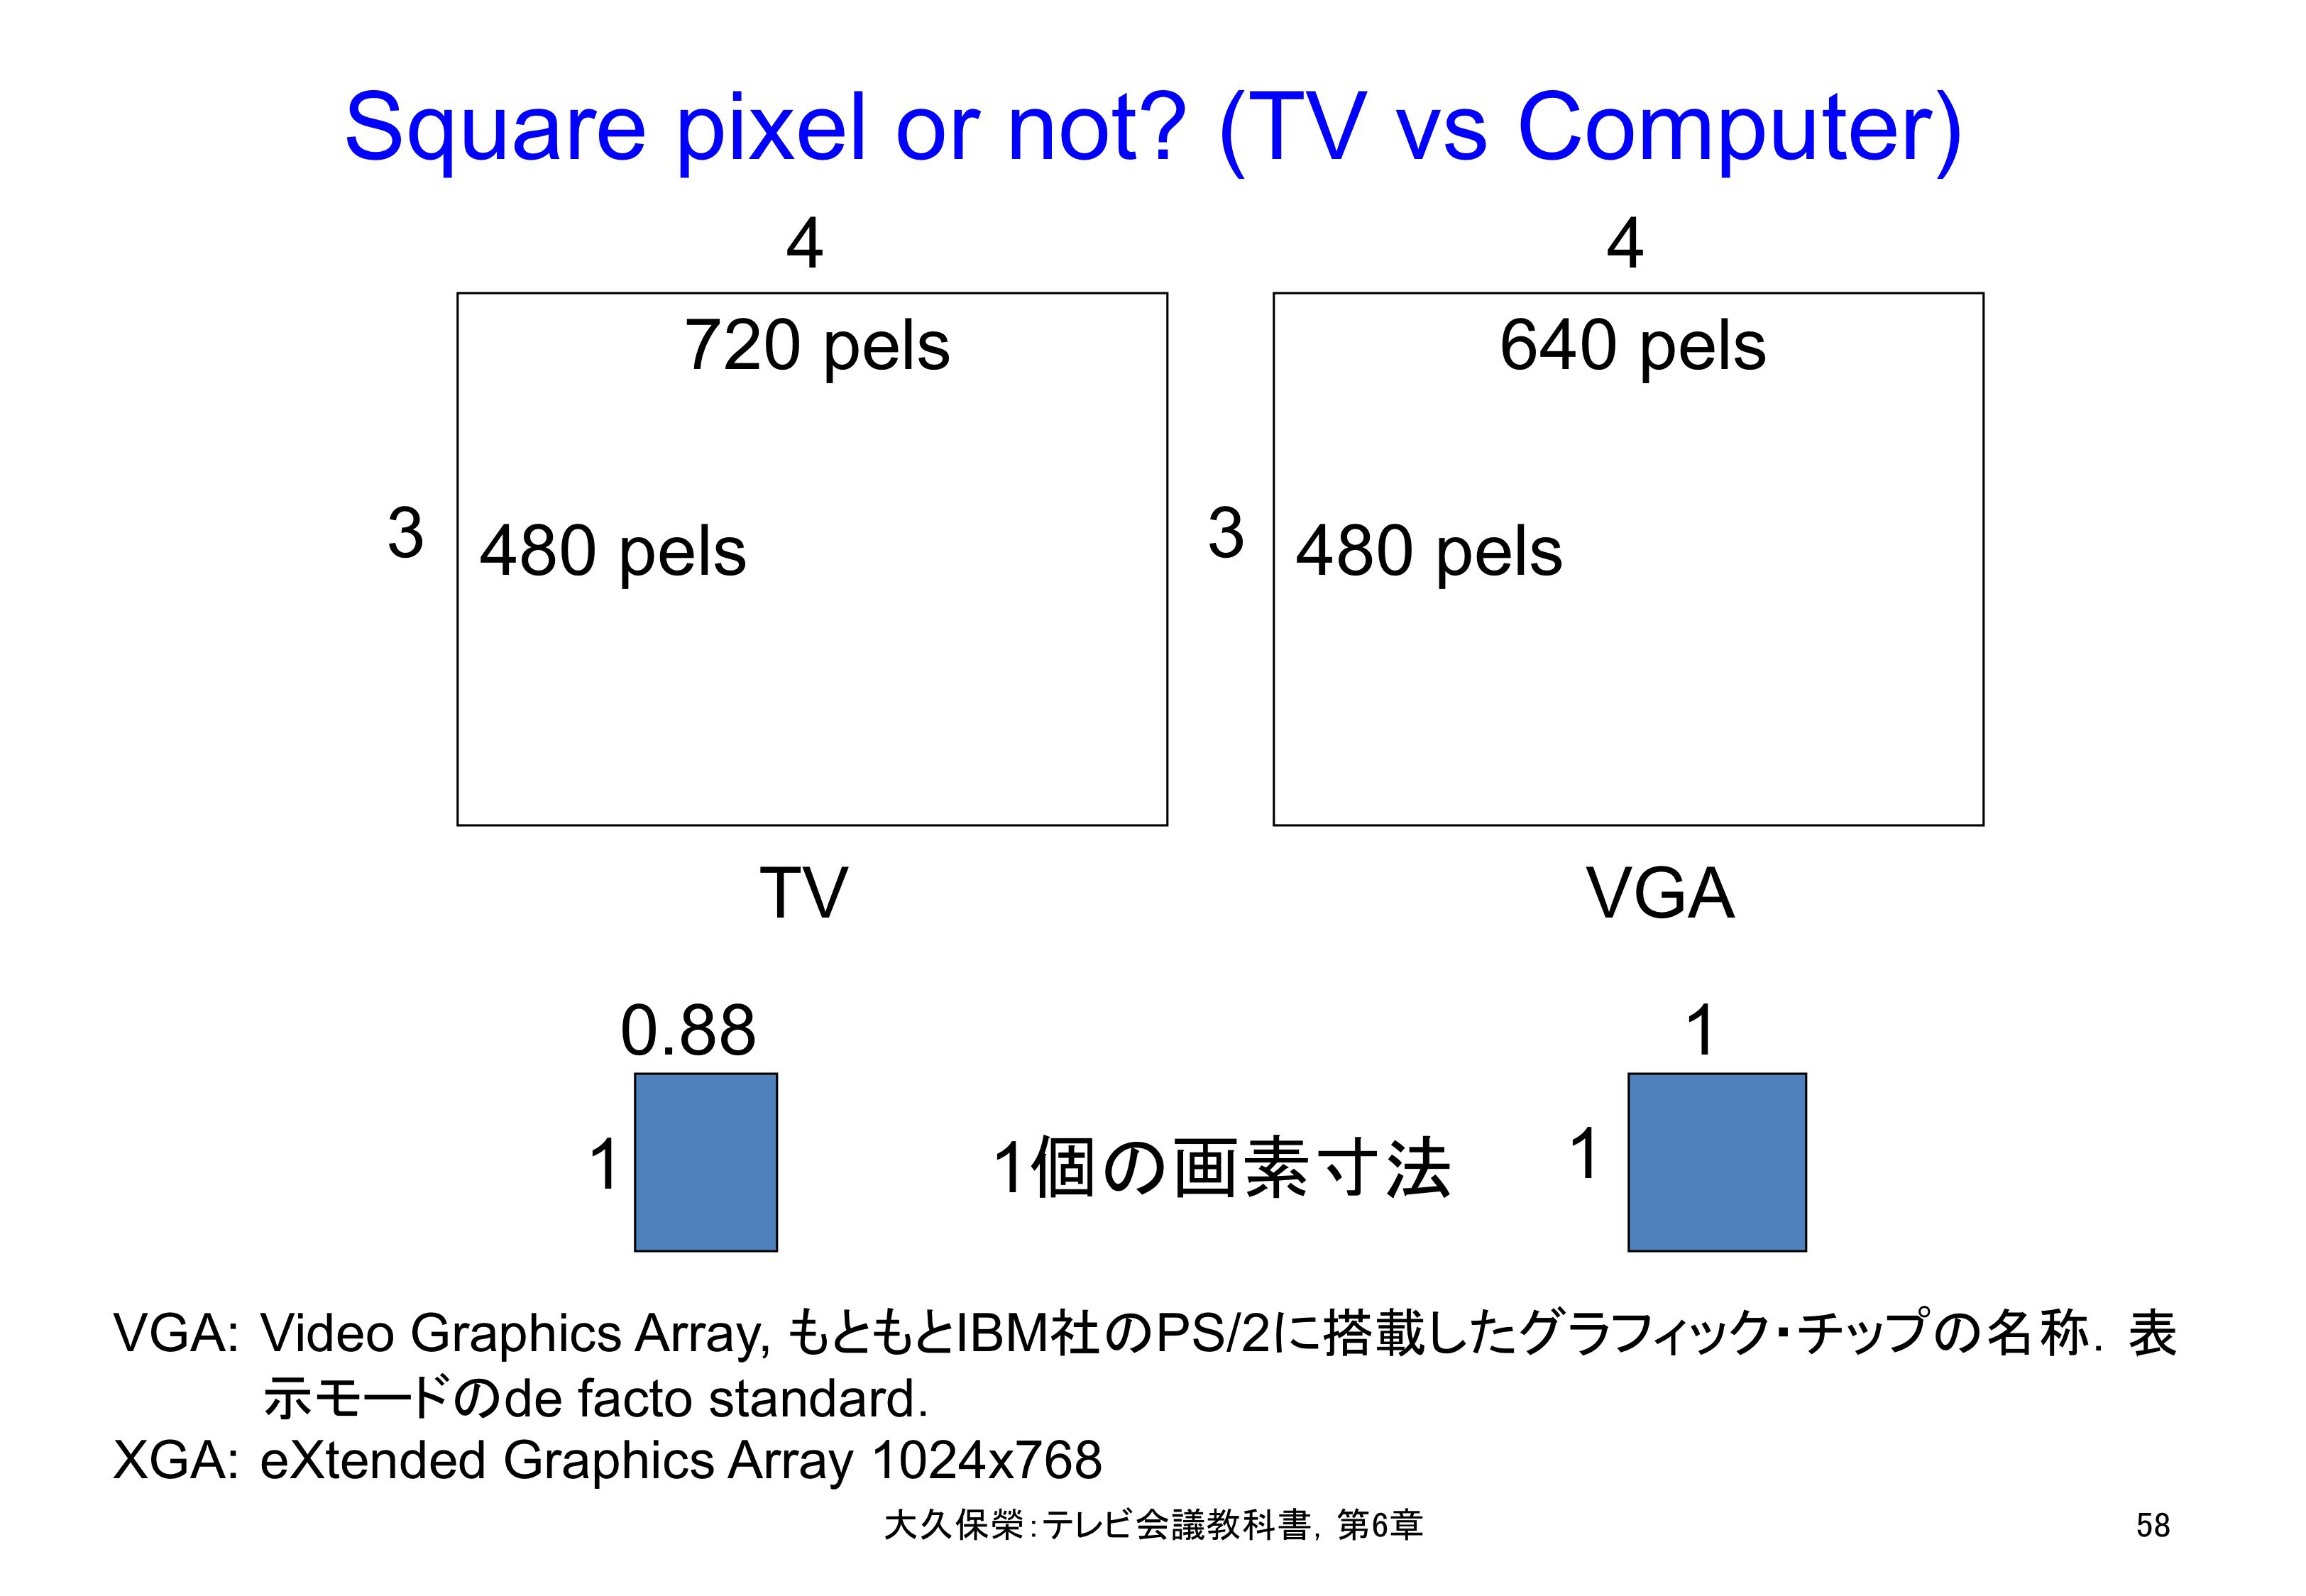 図C6-5 Square pixel or not? (TV vs Computer)